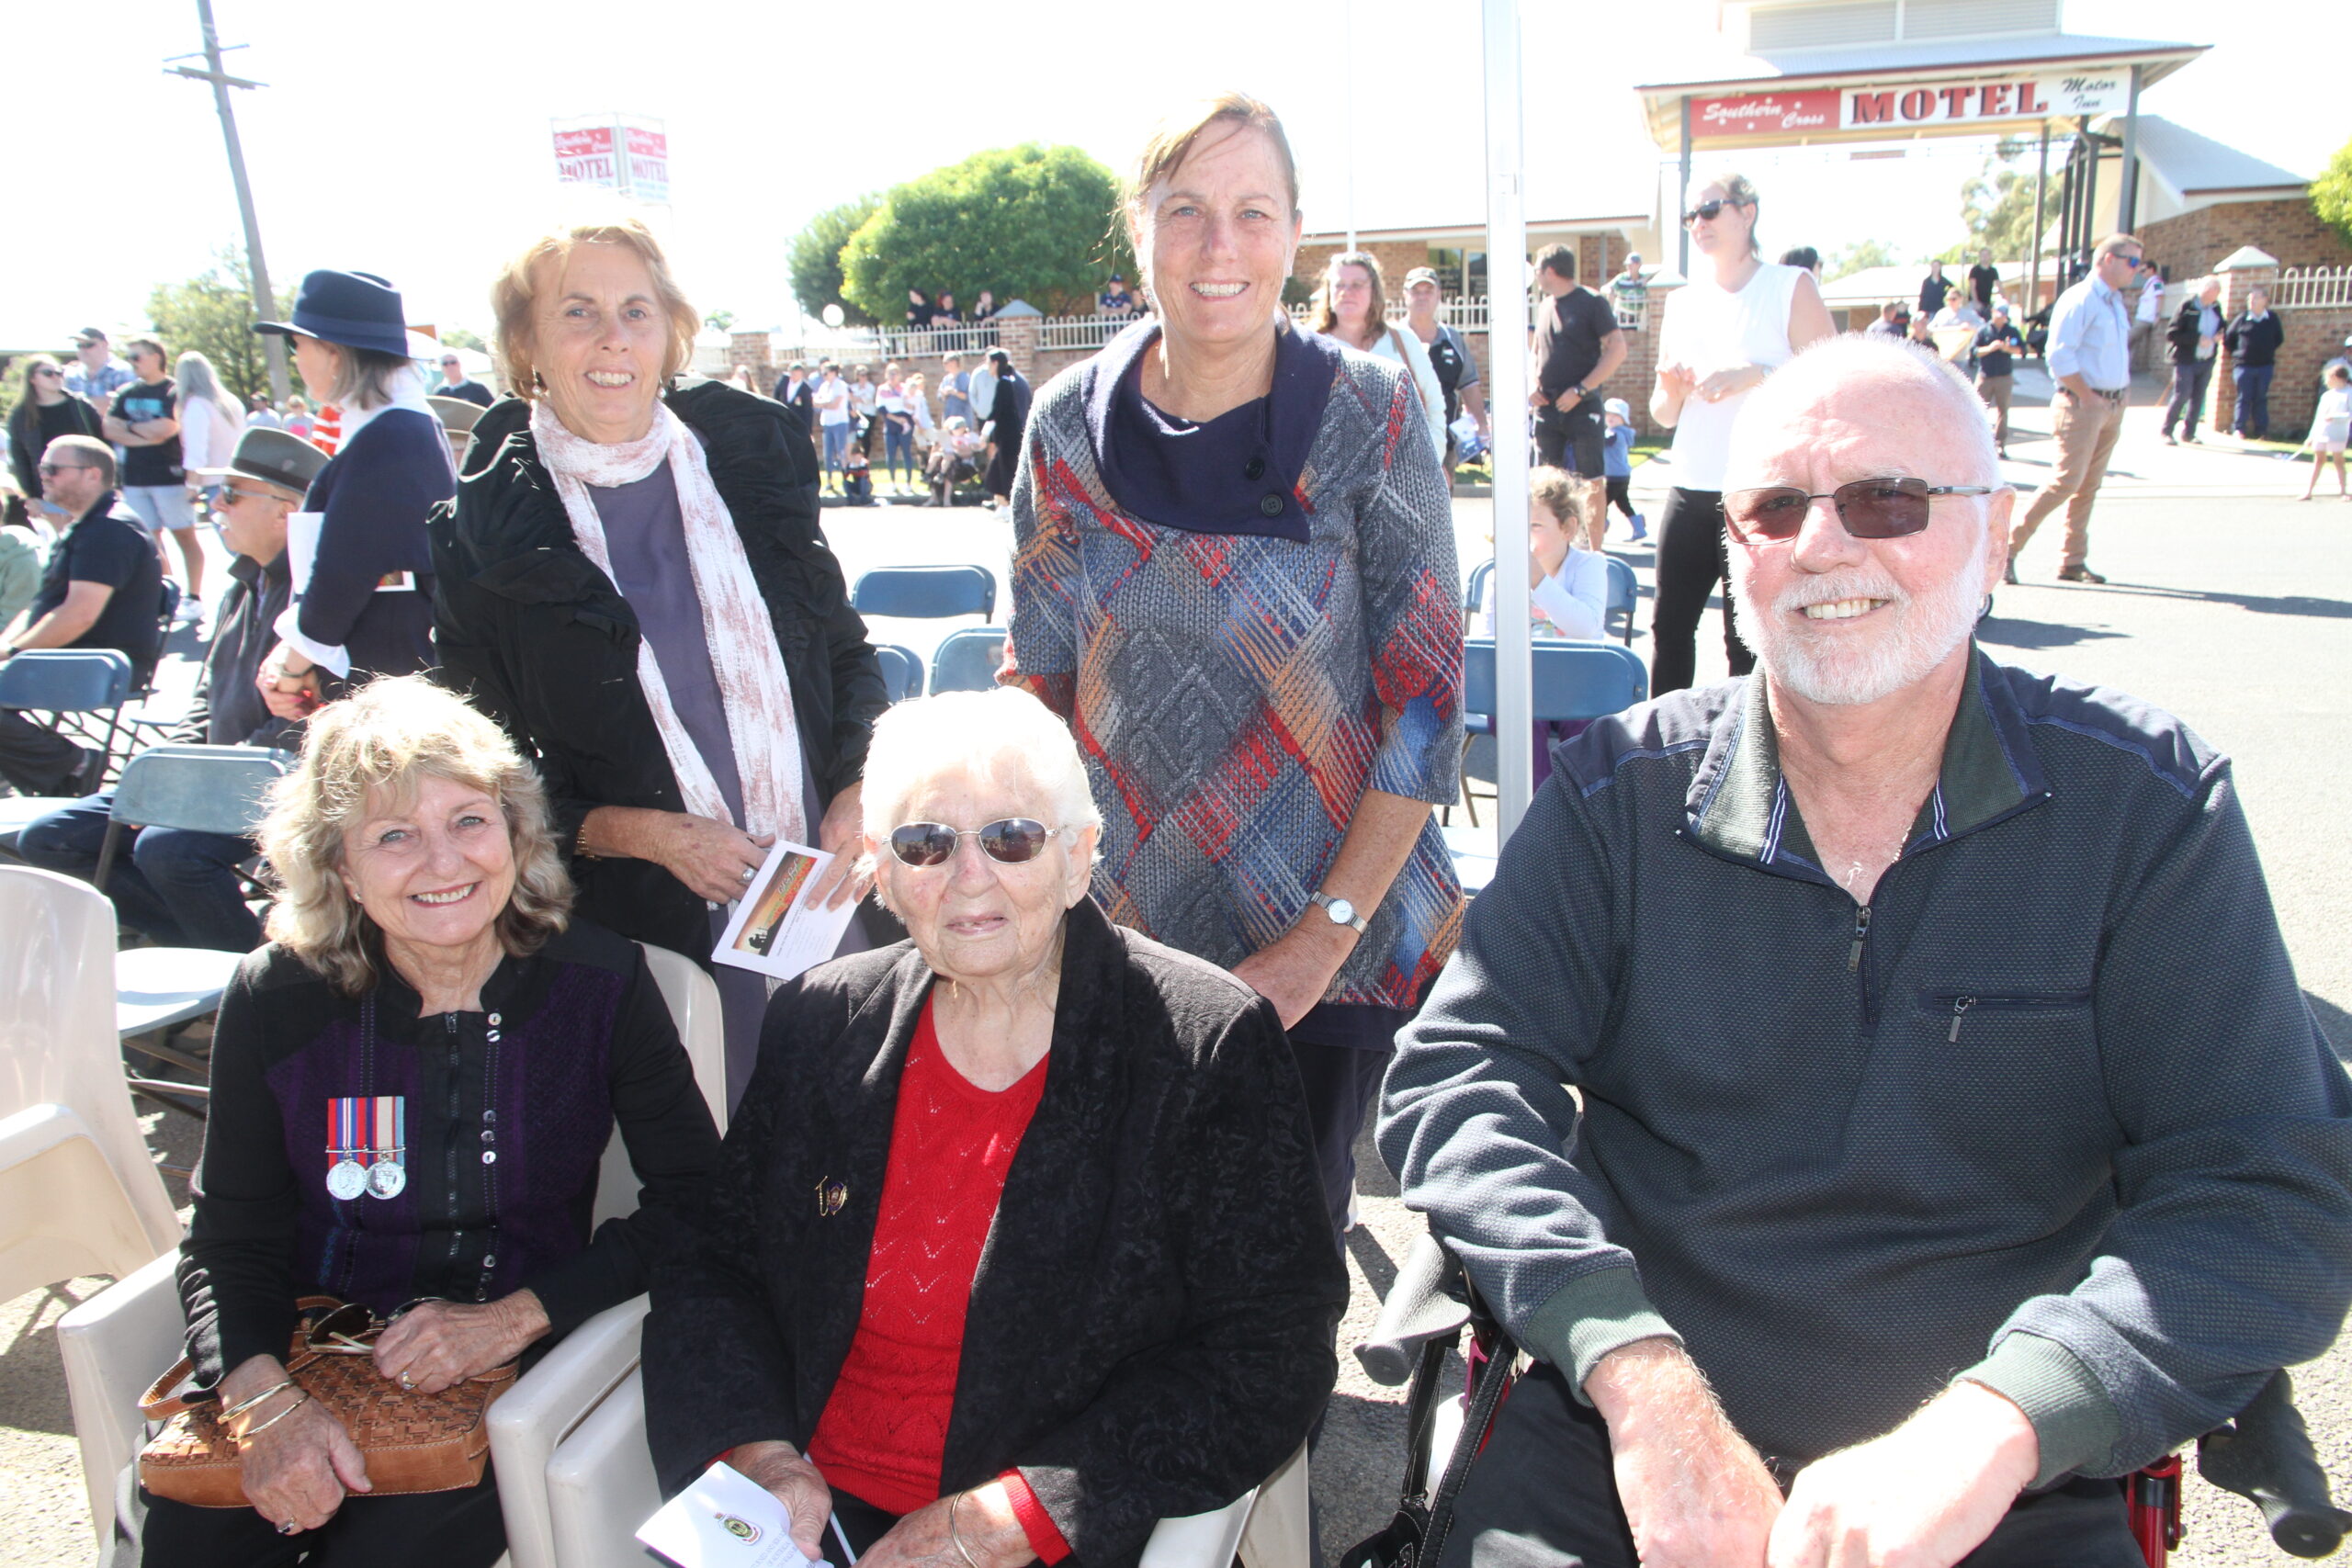 Back, Bernadette O’Connor, Jo Morley, front from left, Vicki, Shirley and Wayne Graham.